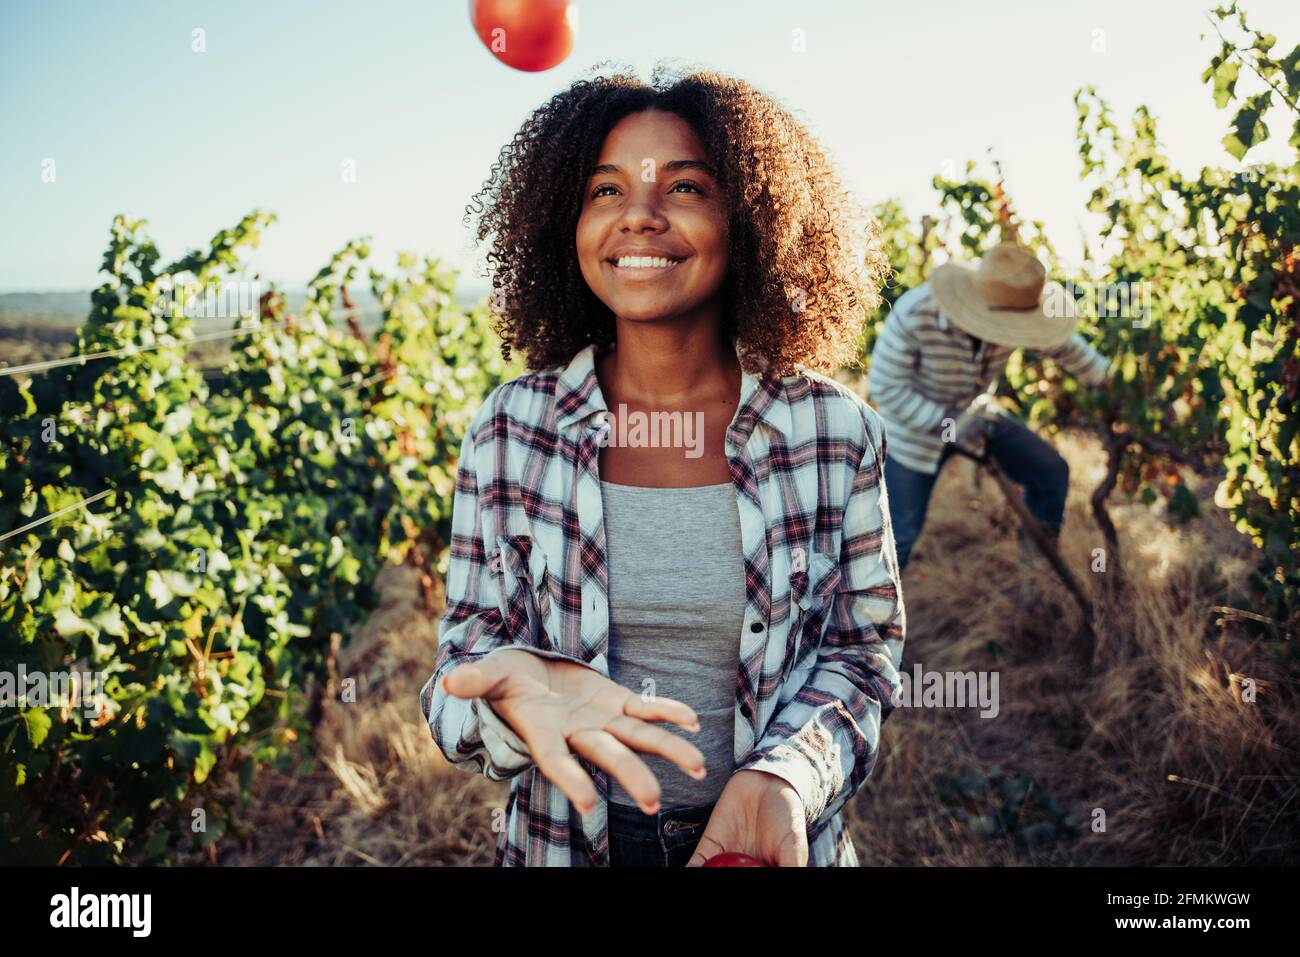 Femelle paysanne mixte de race jouant avec des légumes debout dans le vignoble Banque D'Images